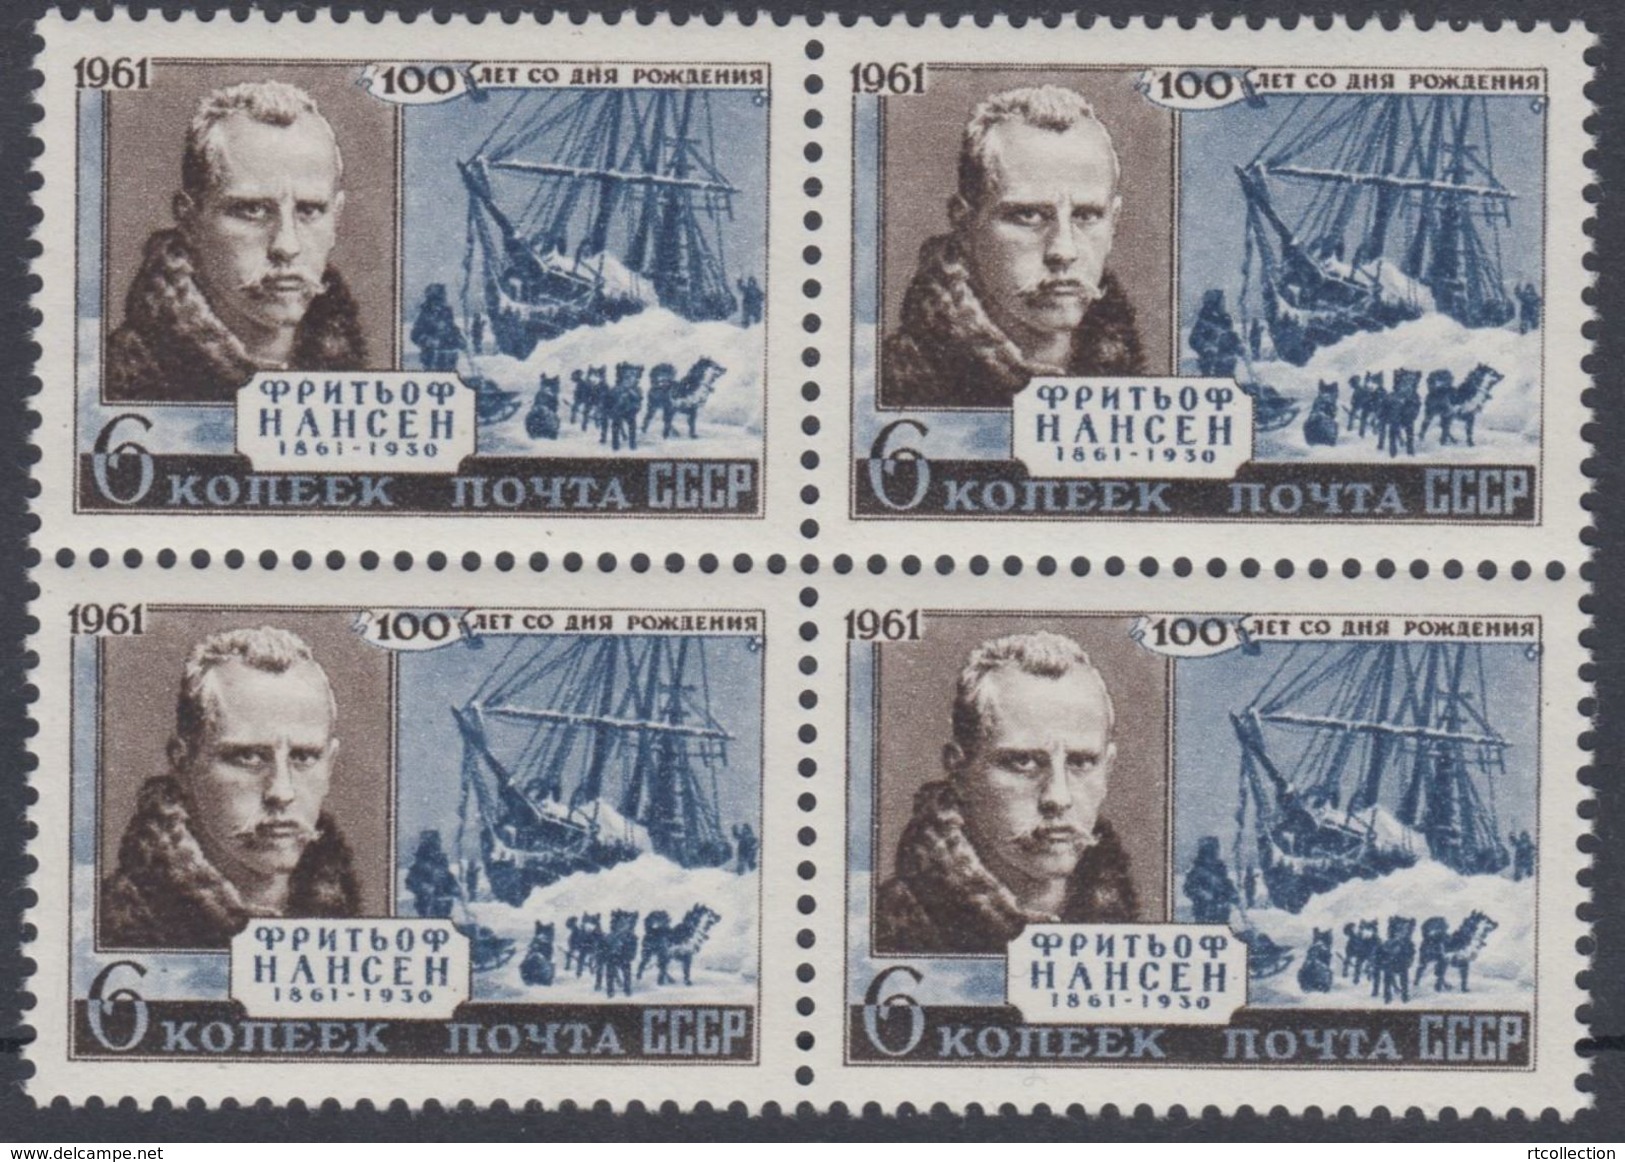 USSR Russia 1961 Block Birth Centenary Nansen Norwegian Explorer Norway People Polar Ship Fleet Stamps MNH Scott 2557 - Polarforscher & Promis